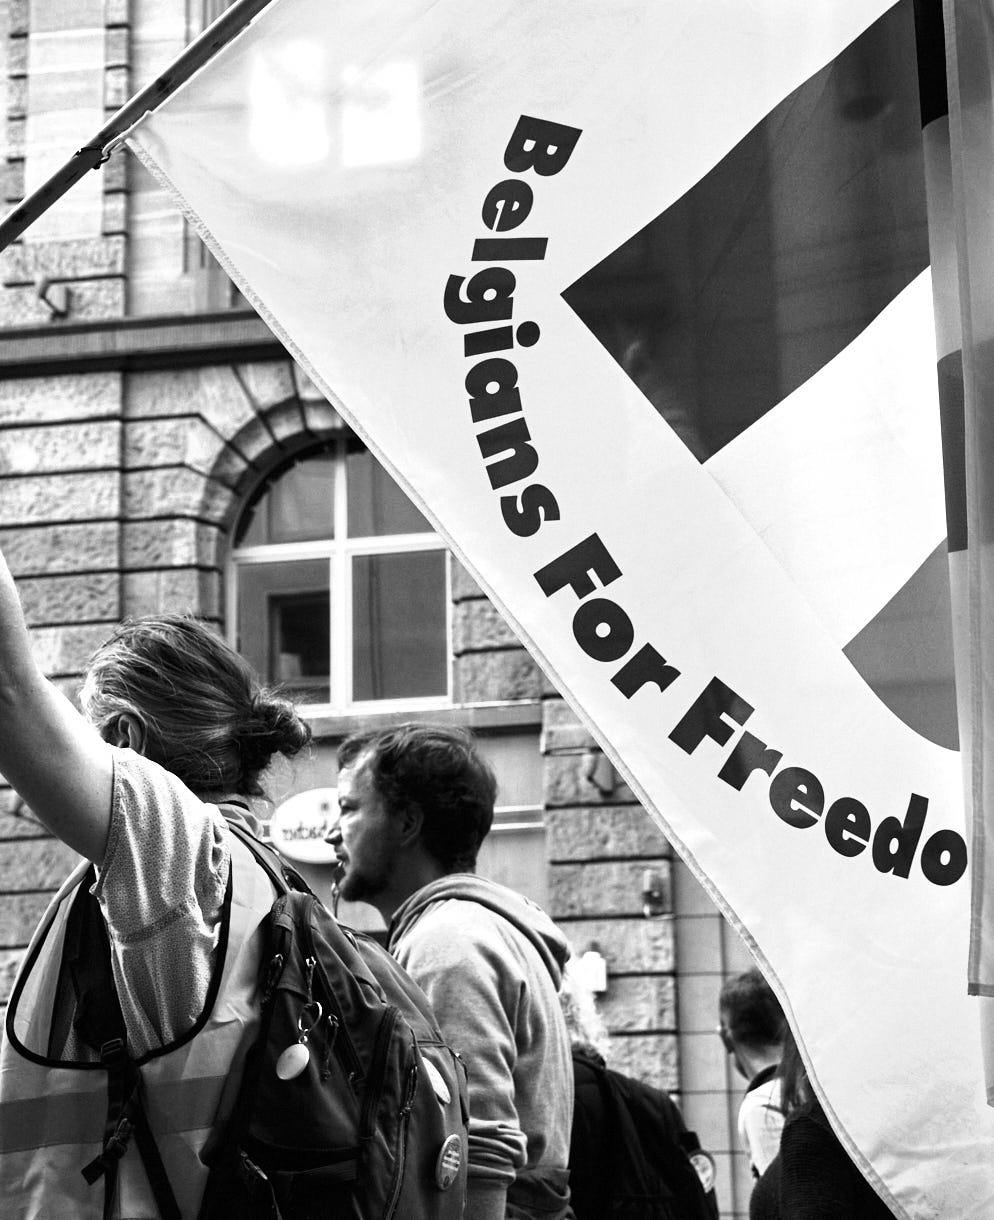 H.Schiele: Bilderserie von der "Europeans United" - Demo in Frankfurt, 22. Oktober 2022